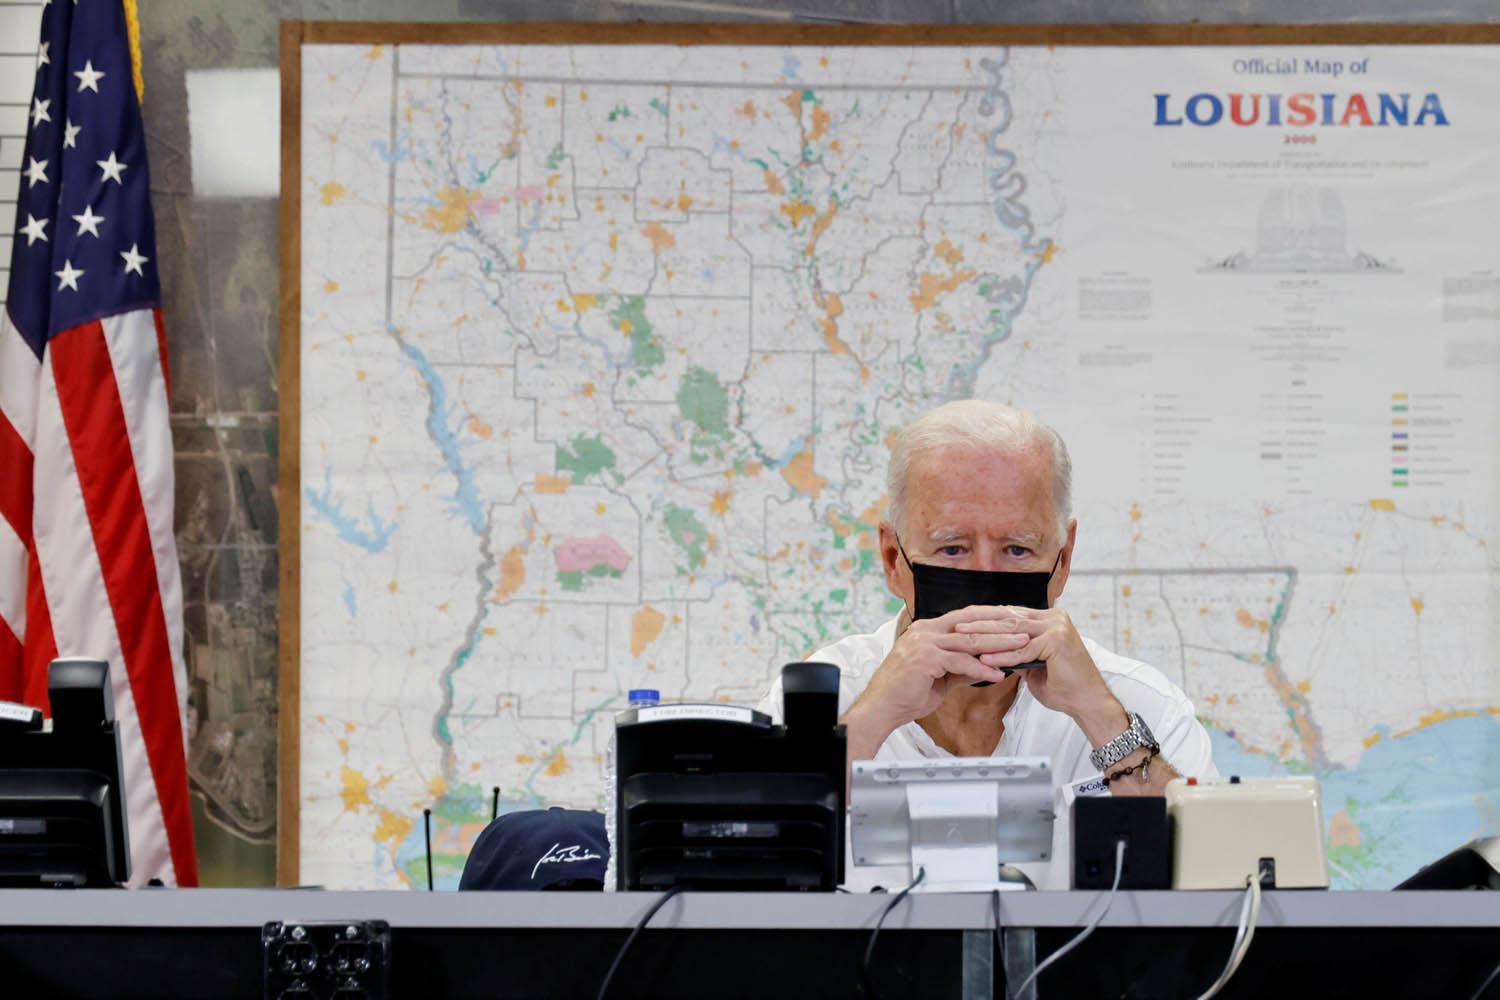 الرئيس الأميركي جو بايدن يتفقد آثار الاعصار في ولاية لويزيانا